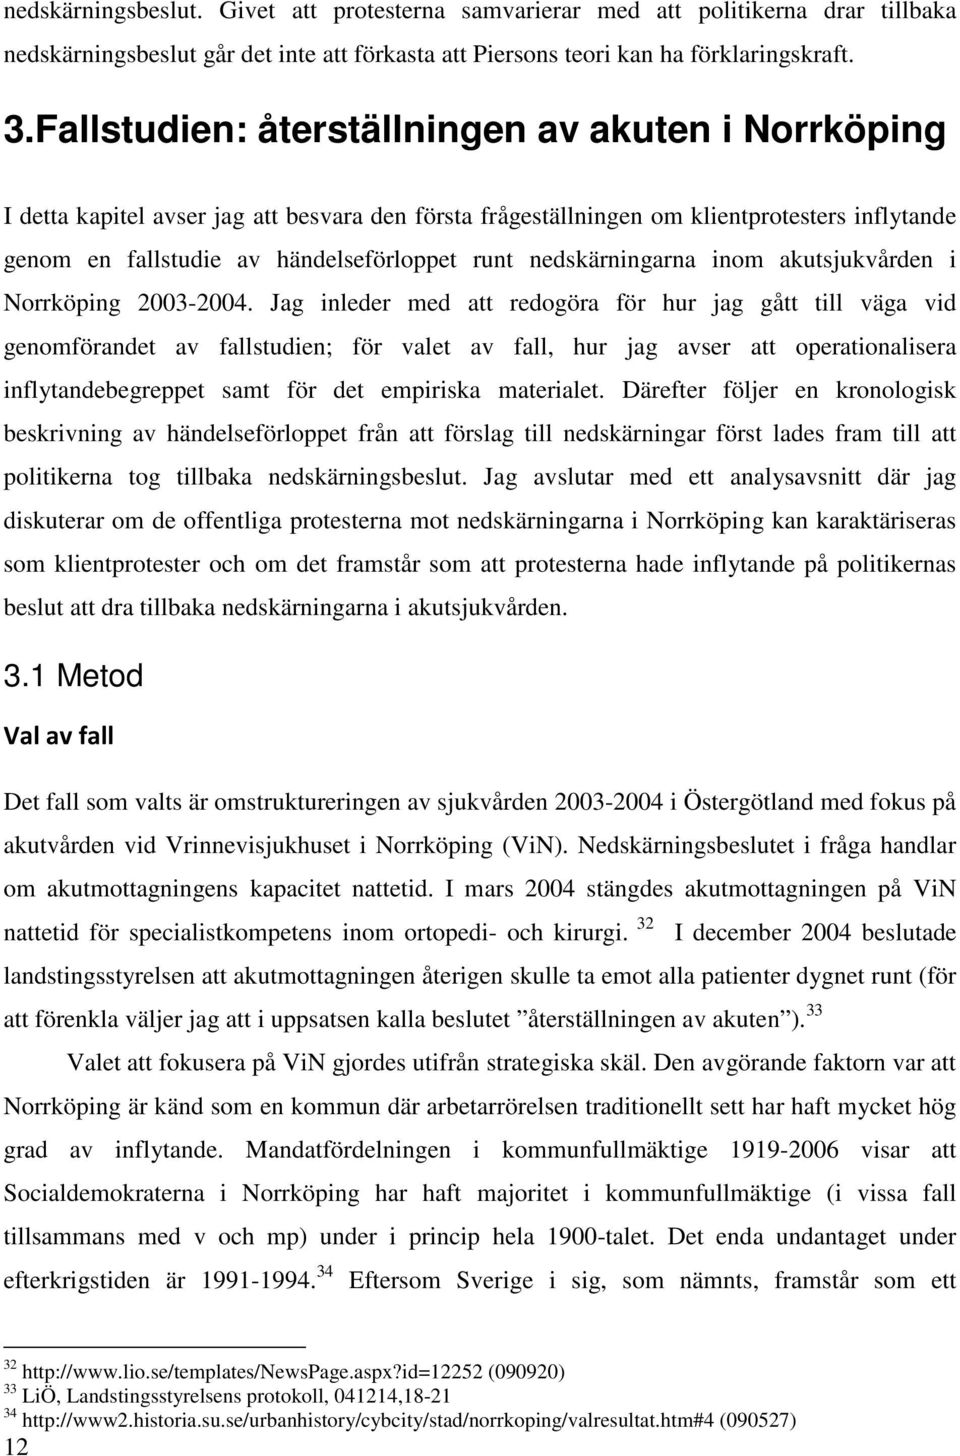 nedskärningarna inom akutsjukvården i Norrköping 2003-2004.